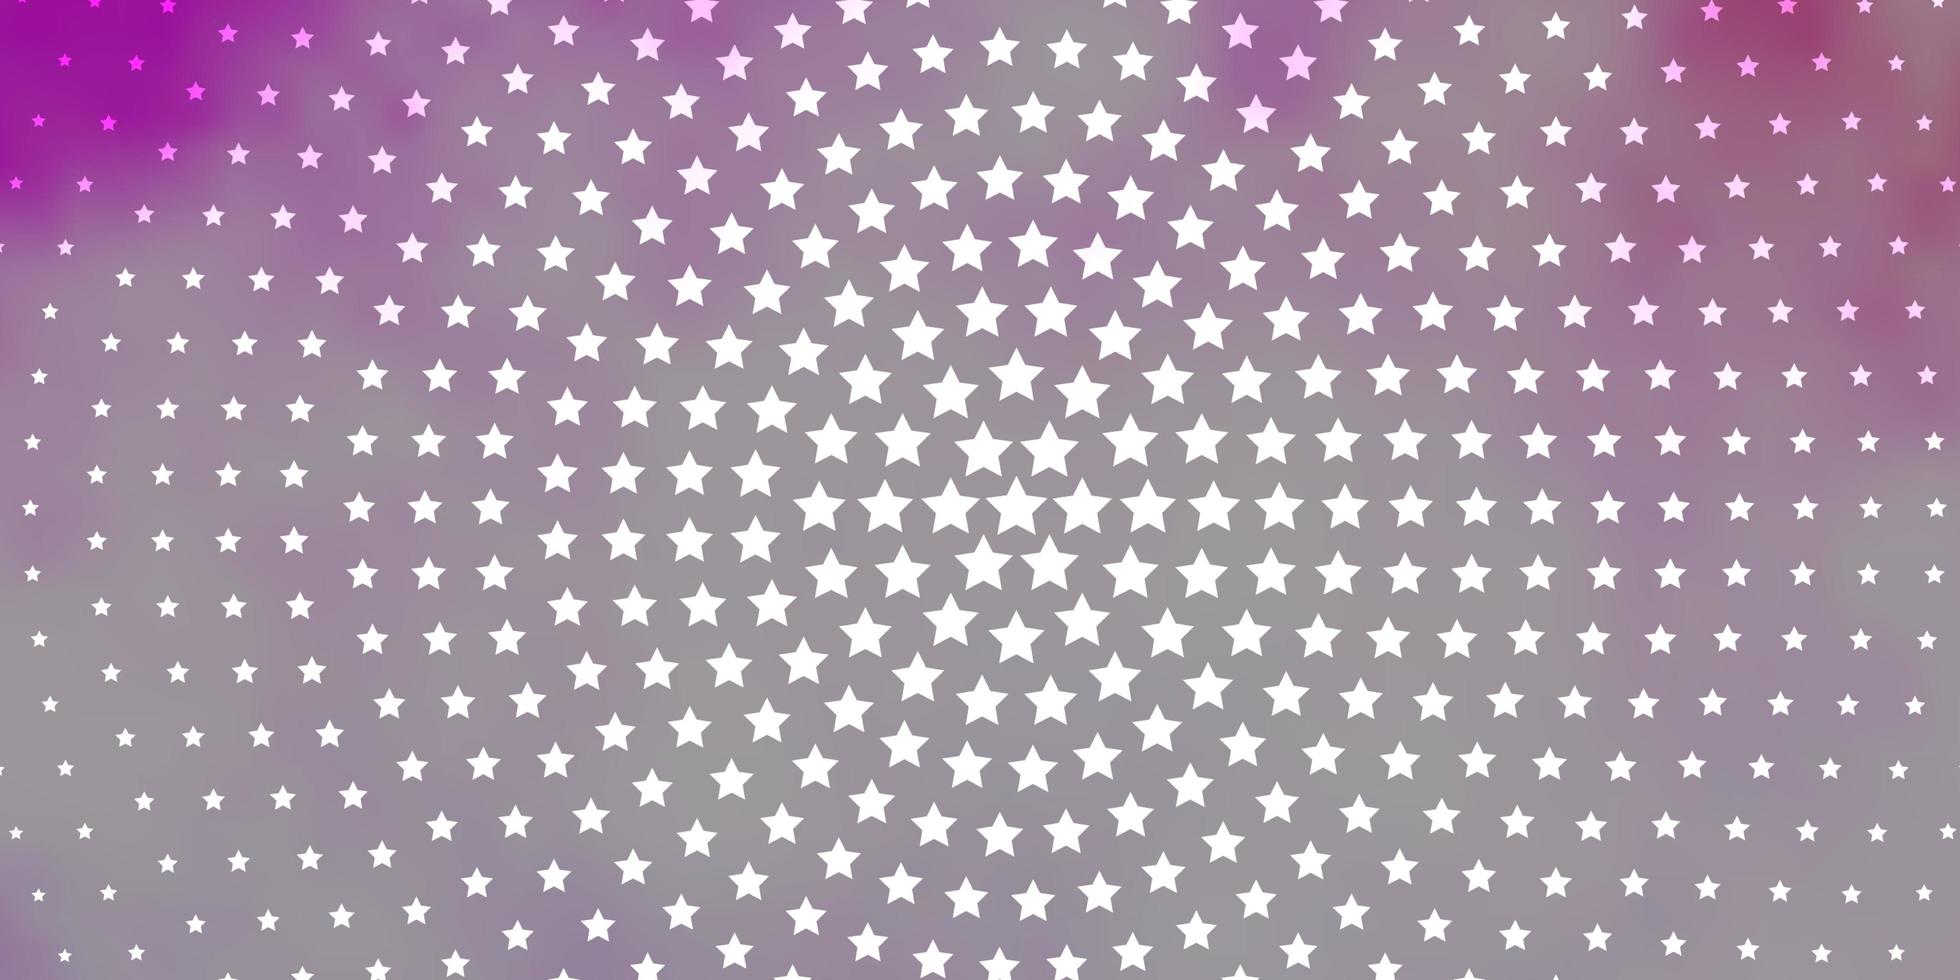 fond de vecteur violet clair et rose avec des étoiles colorées. brouiller le design décoratif dans un style simple avec des étoiles. thème pour téléphones portables.